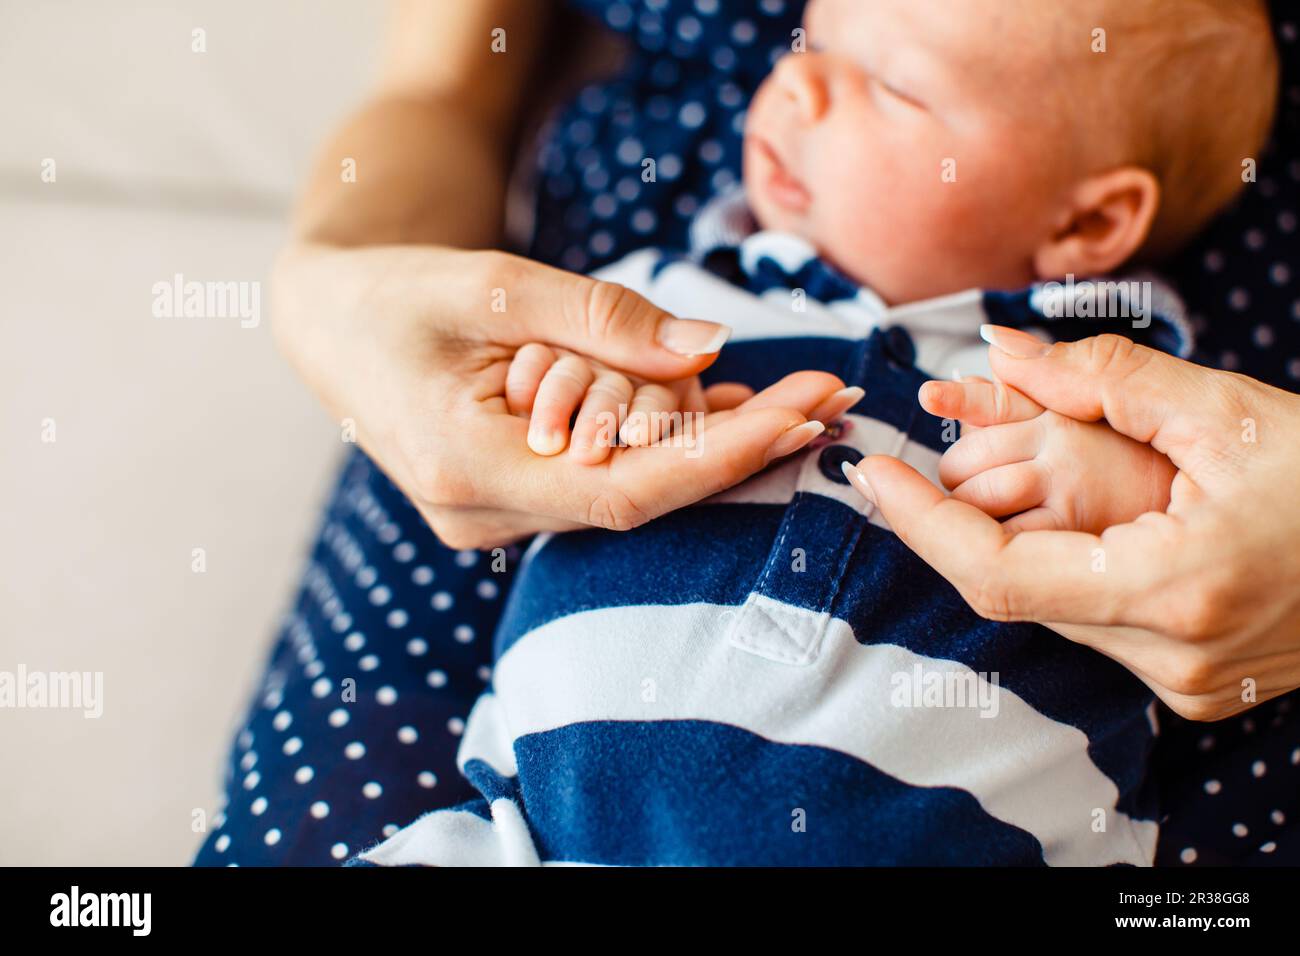 Close view of newborn baby's hands Stock Photo